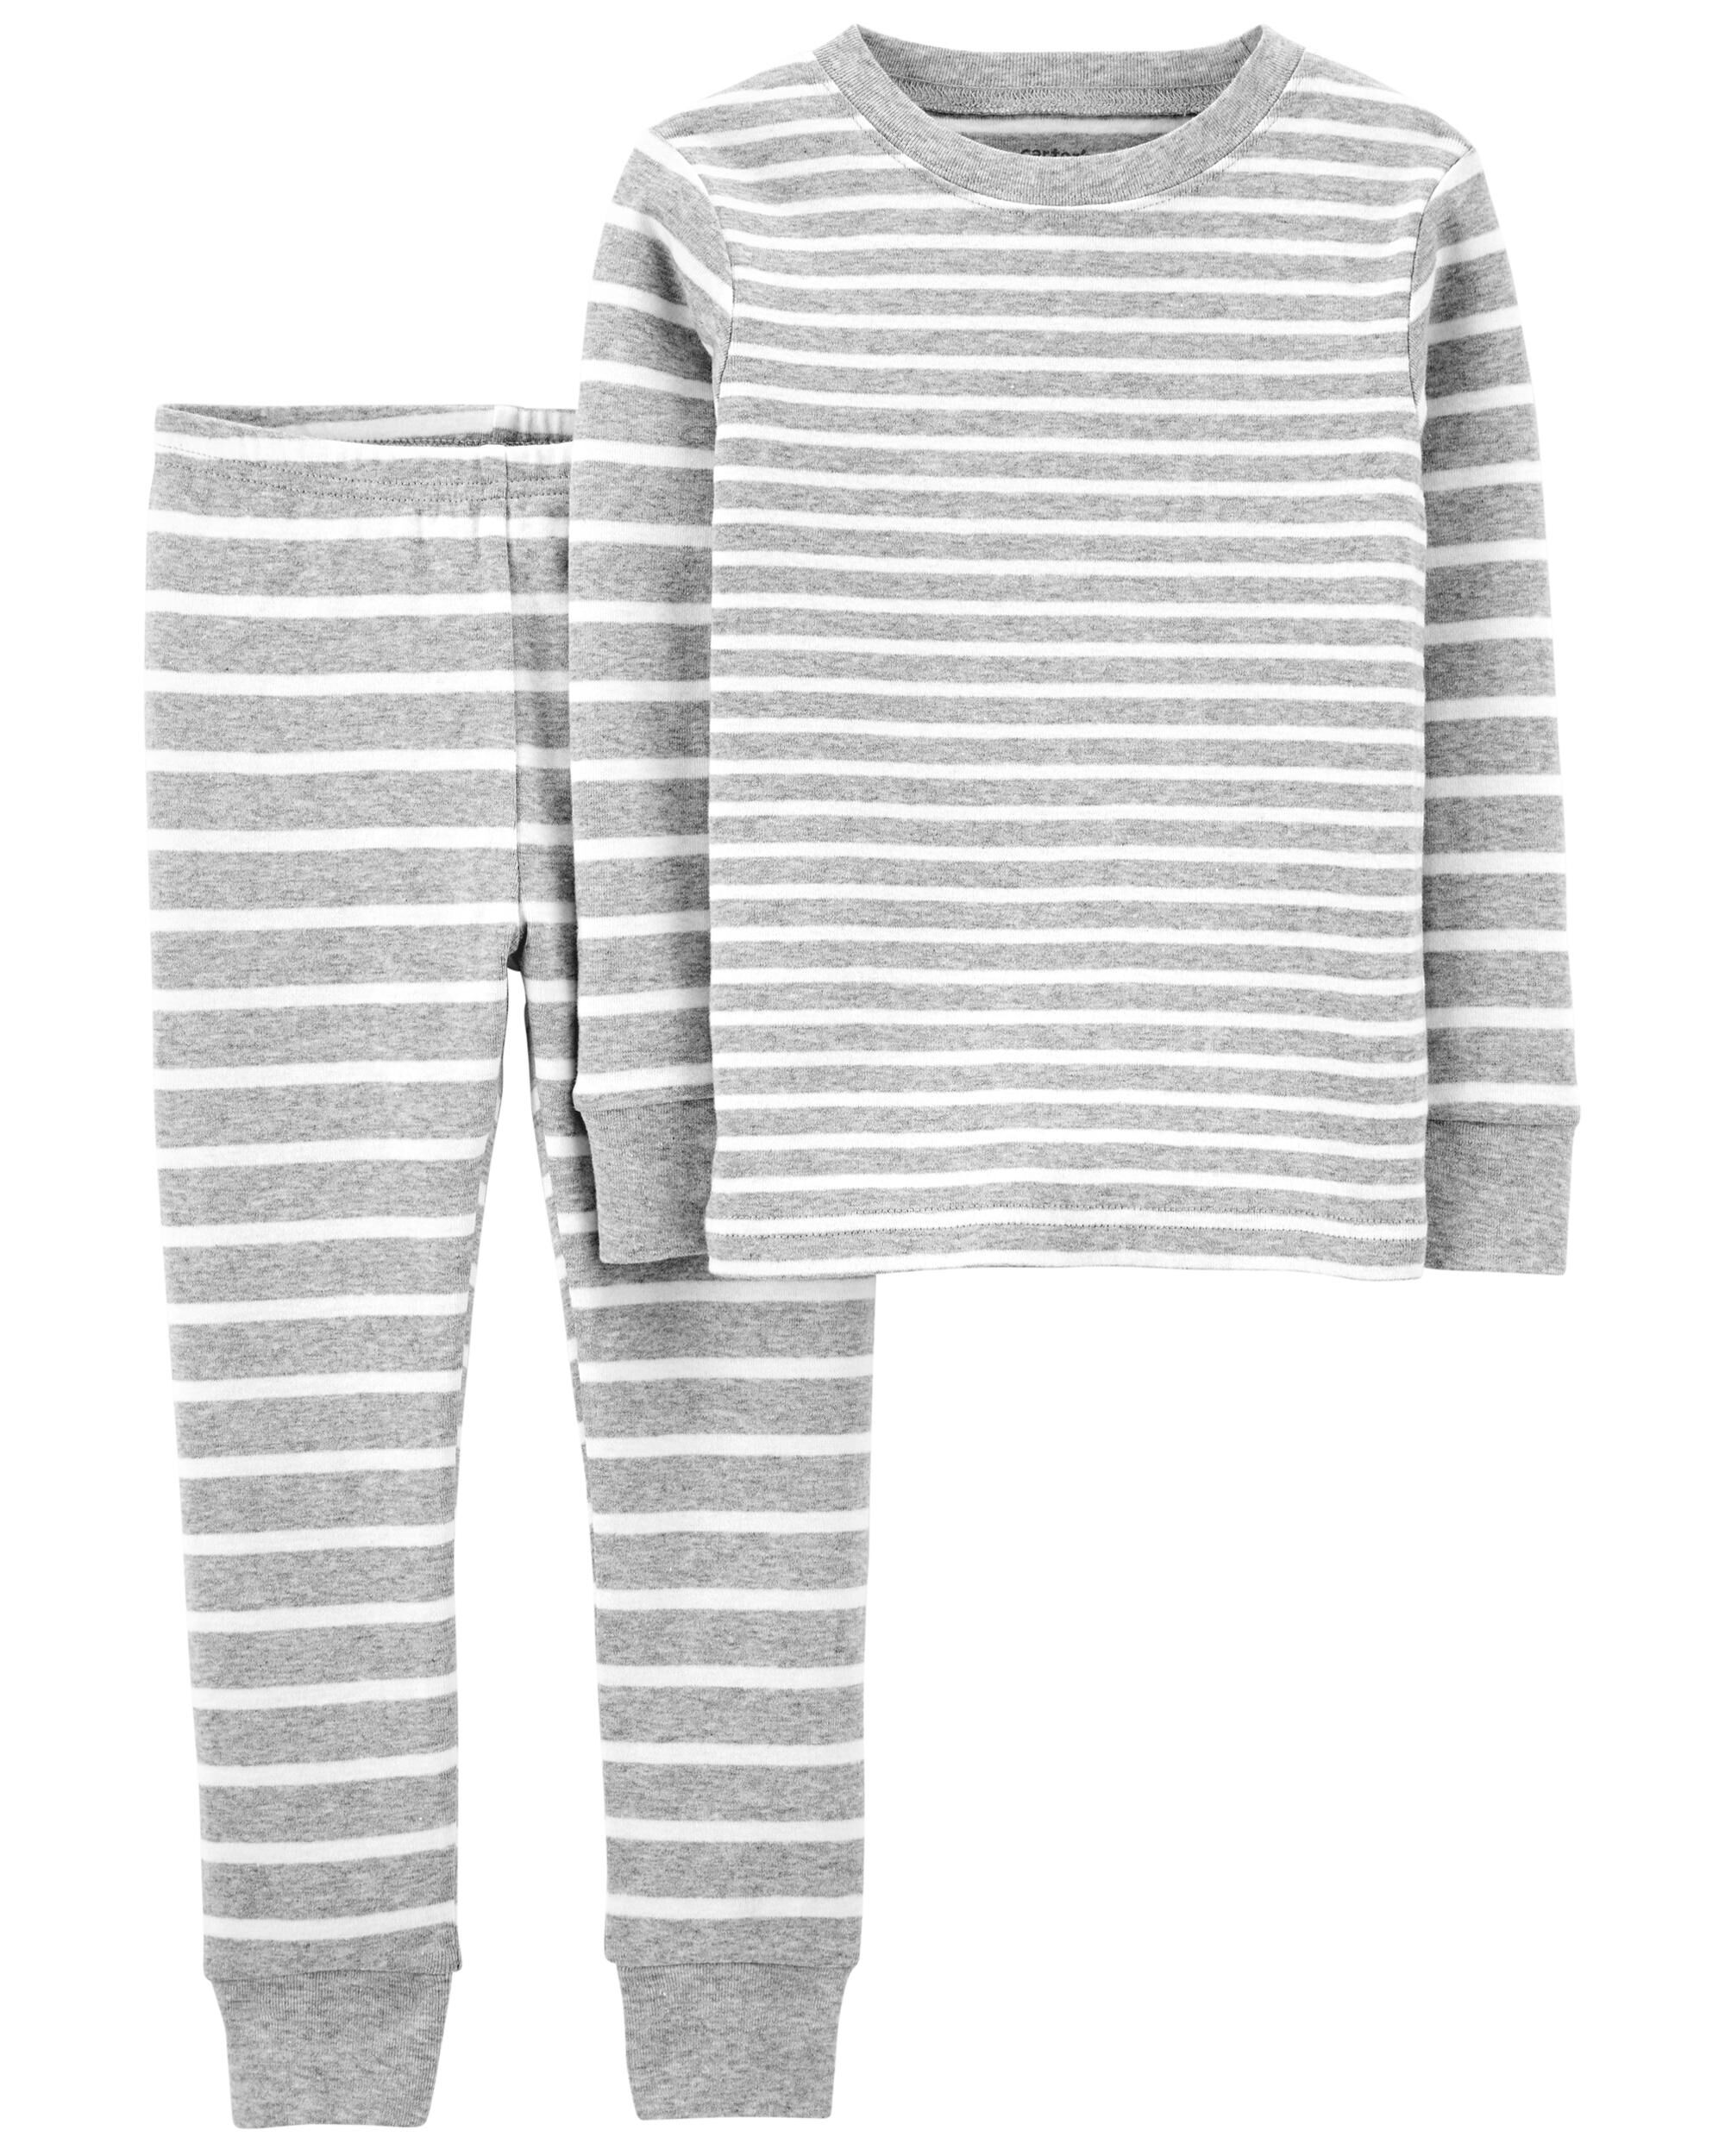 Детская двухсекционная полосатая пижама из 100% плотного хлопка Carter's